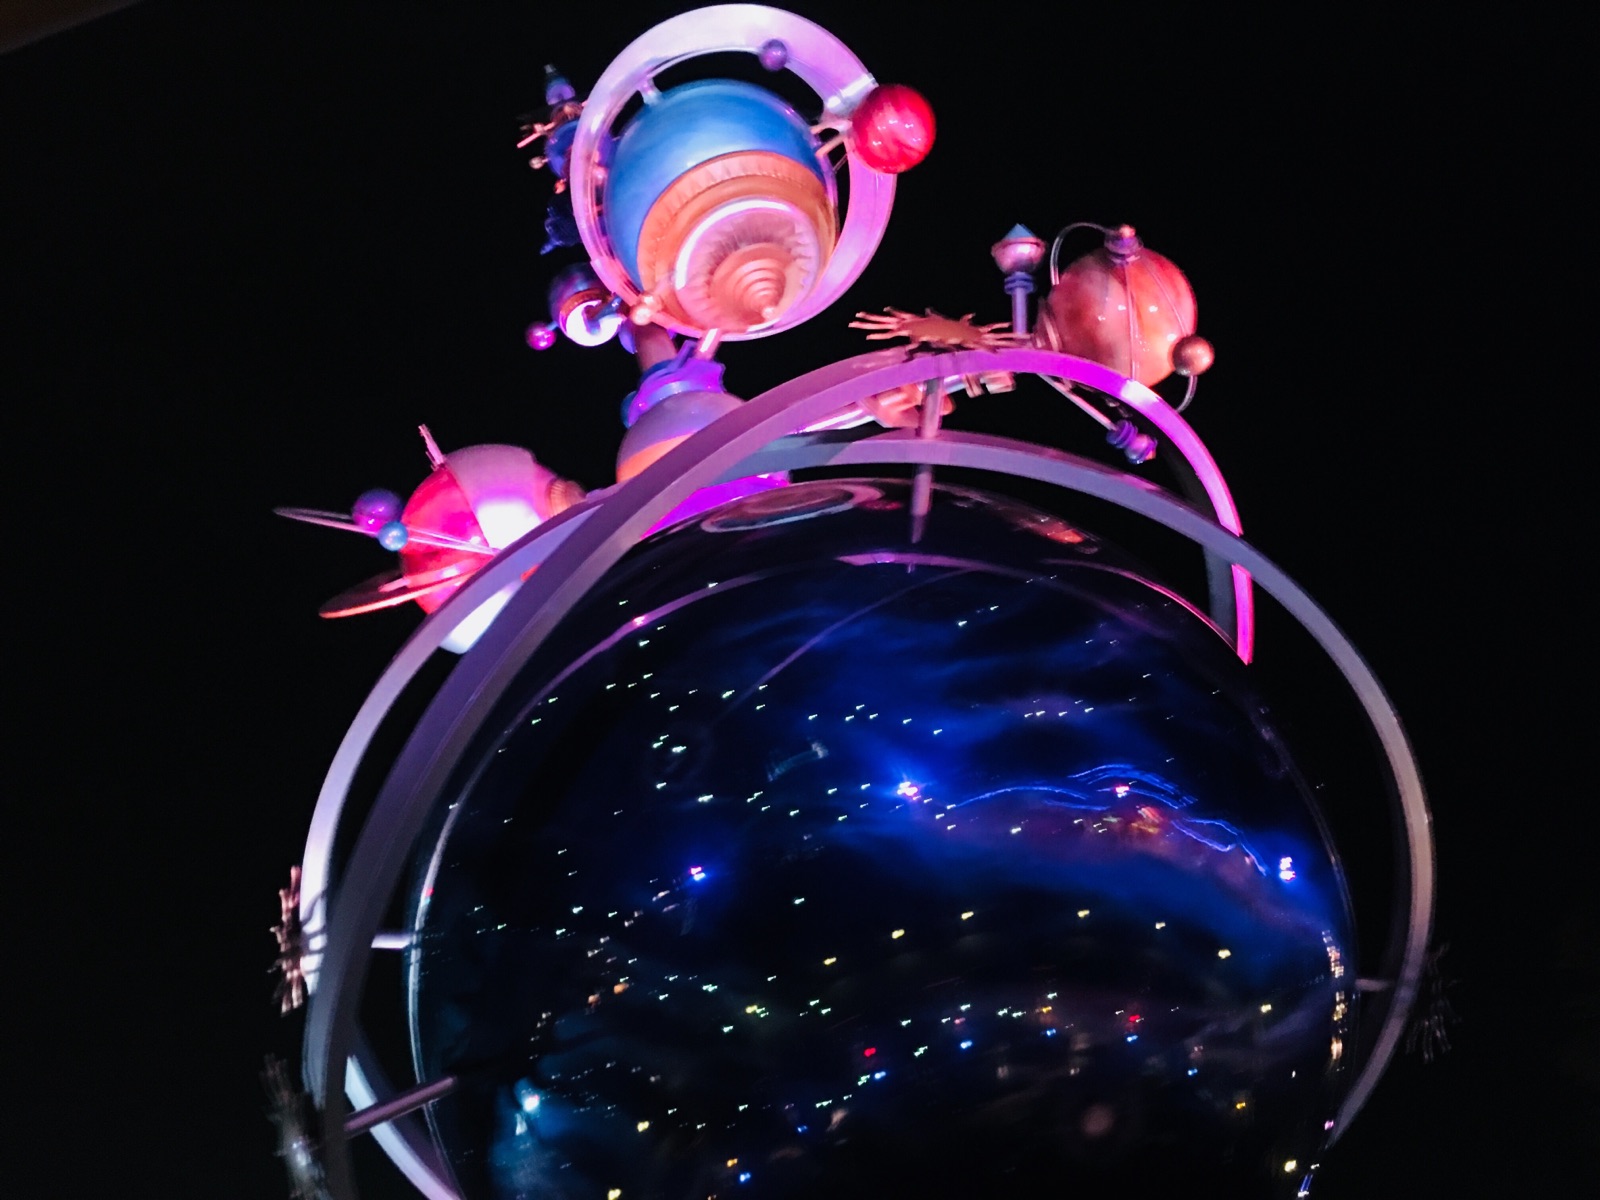 全球最小规模的迪士尼，因公主城堡维修中，晚上八点的烟火秀改为灯彩车游行